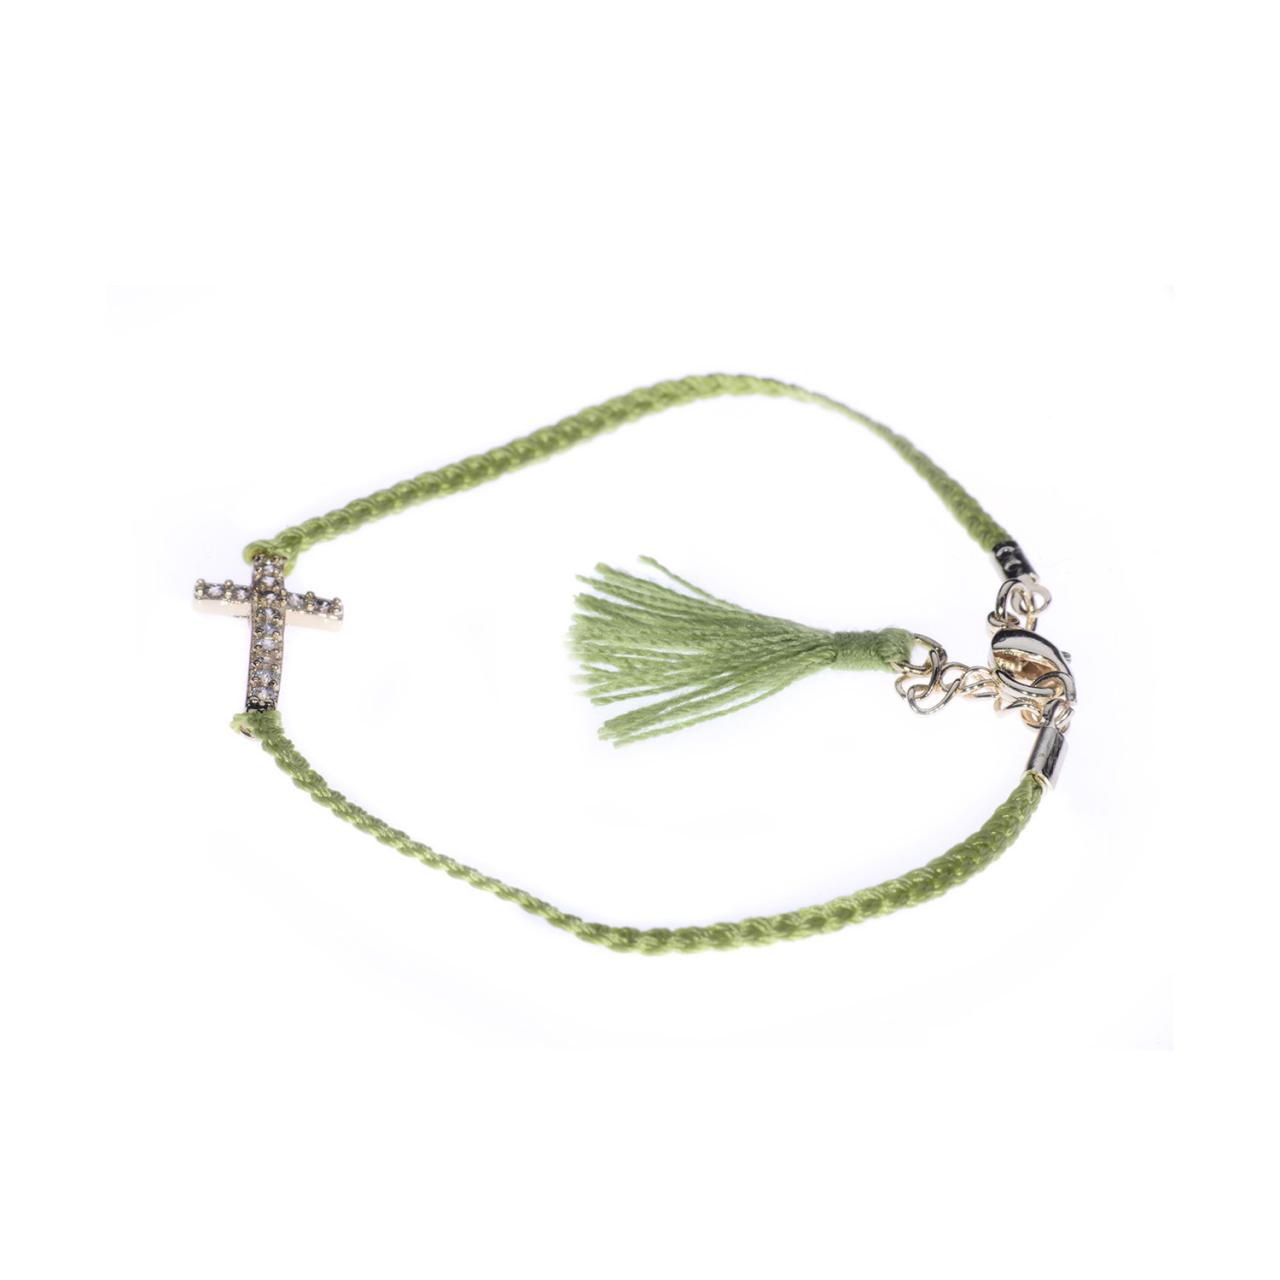 String Bracelet / Green Tassel / Cross Bracelet / Small Tassels / Tassel Bracelet / Braided Bracelet / Delicate Bracelet / Cross Pendant